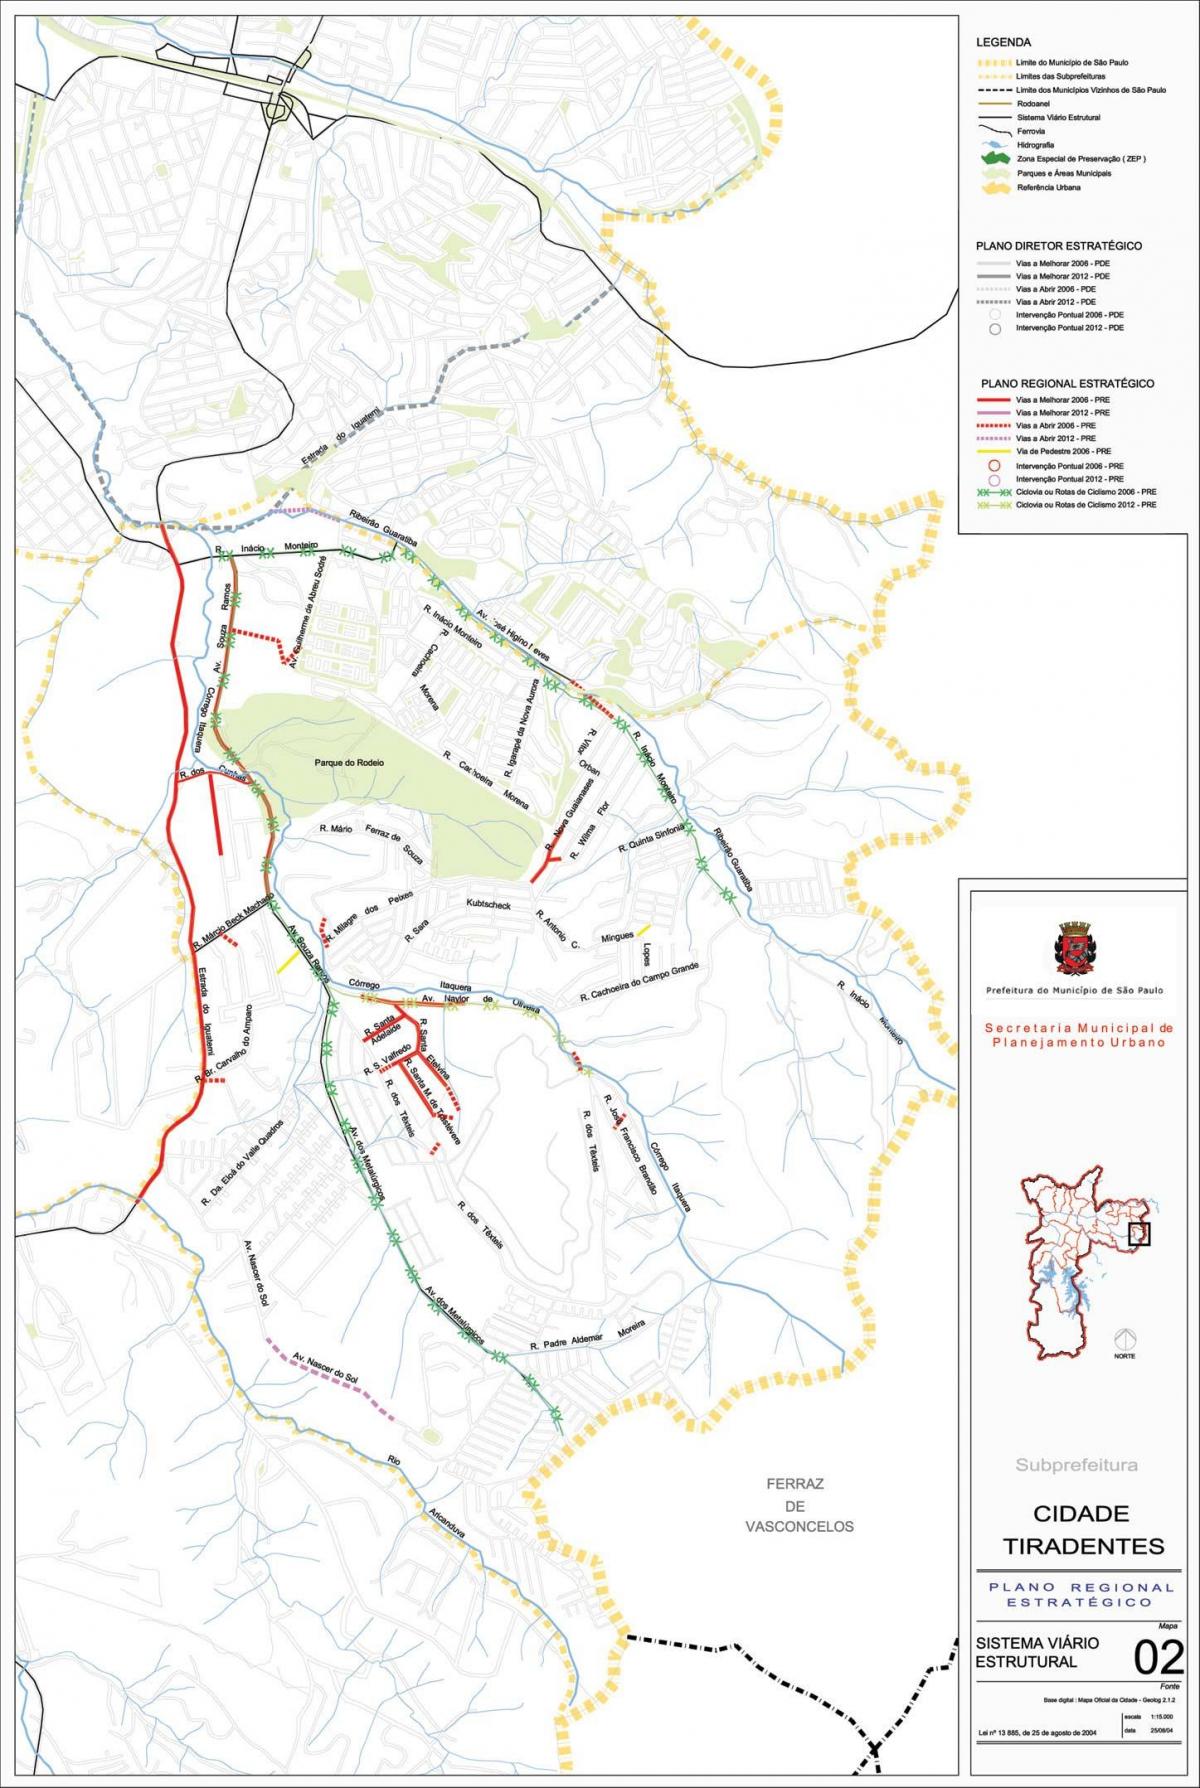 Mapa da Cidade Tiradentes São Paulo - Estradas